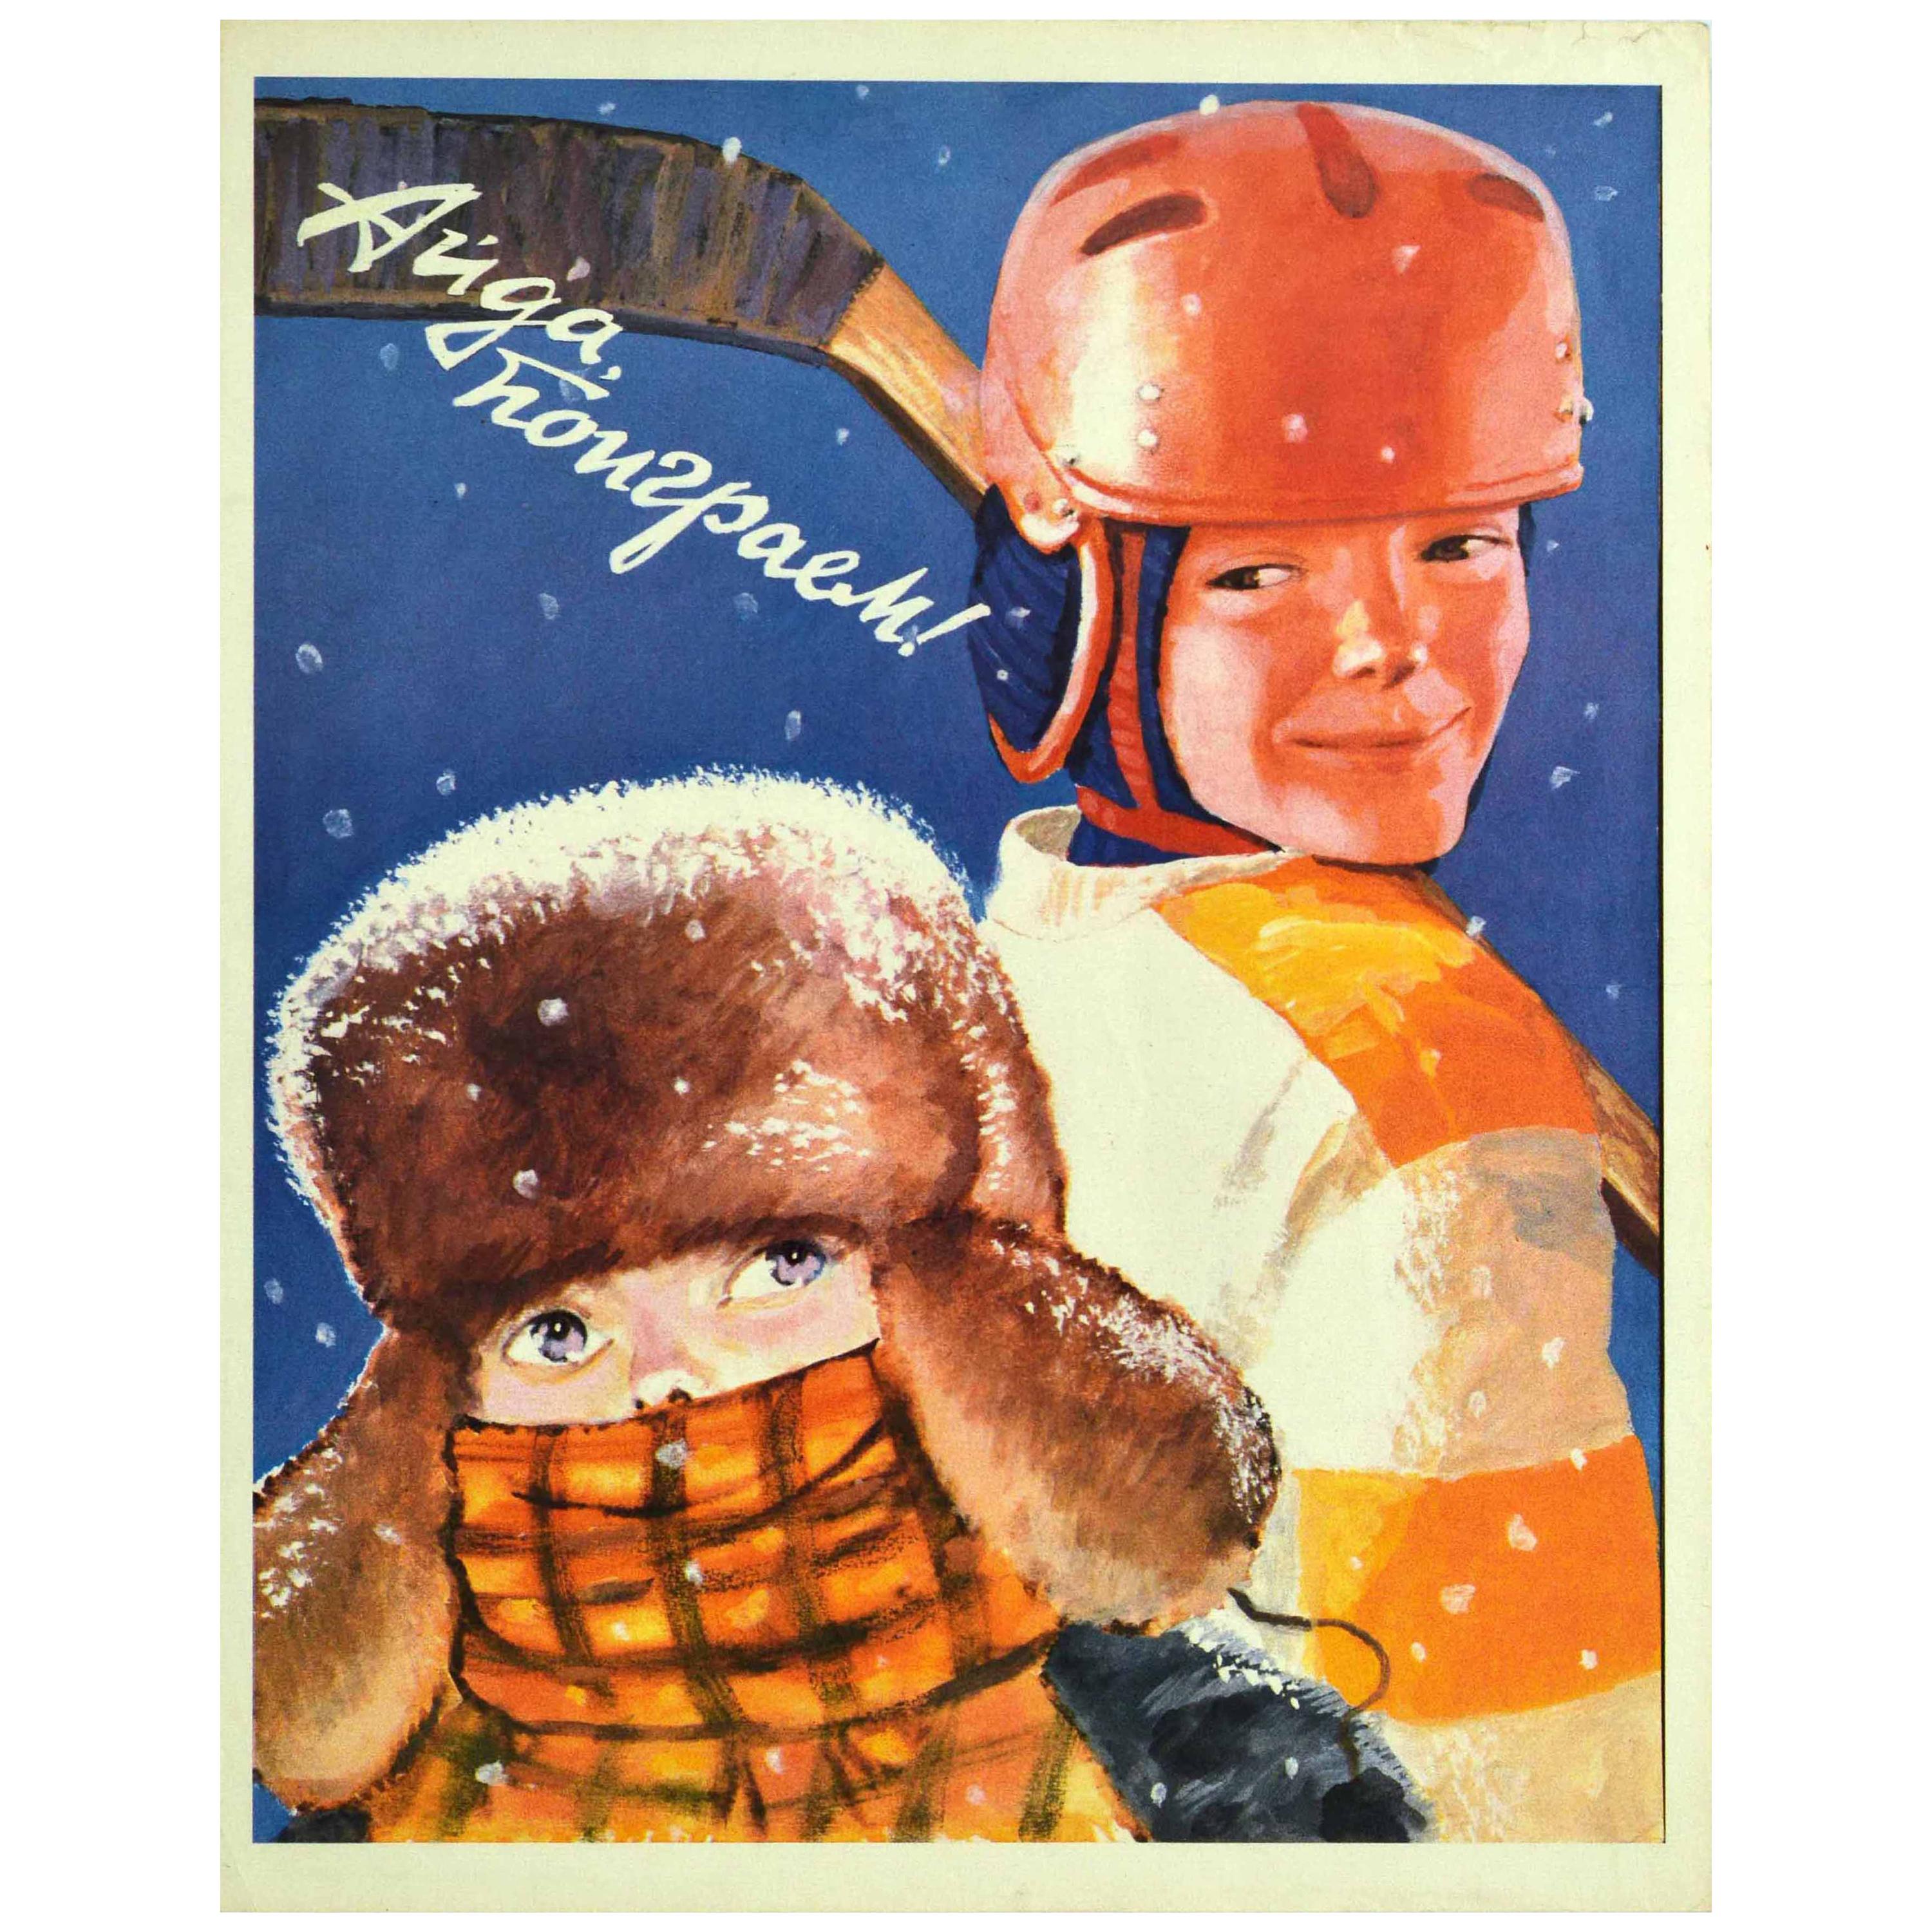 Original Vintage Poster Let's Go Play Ice Hockey Soviet Sport Winter USSR